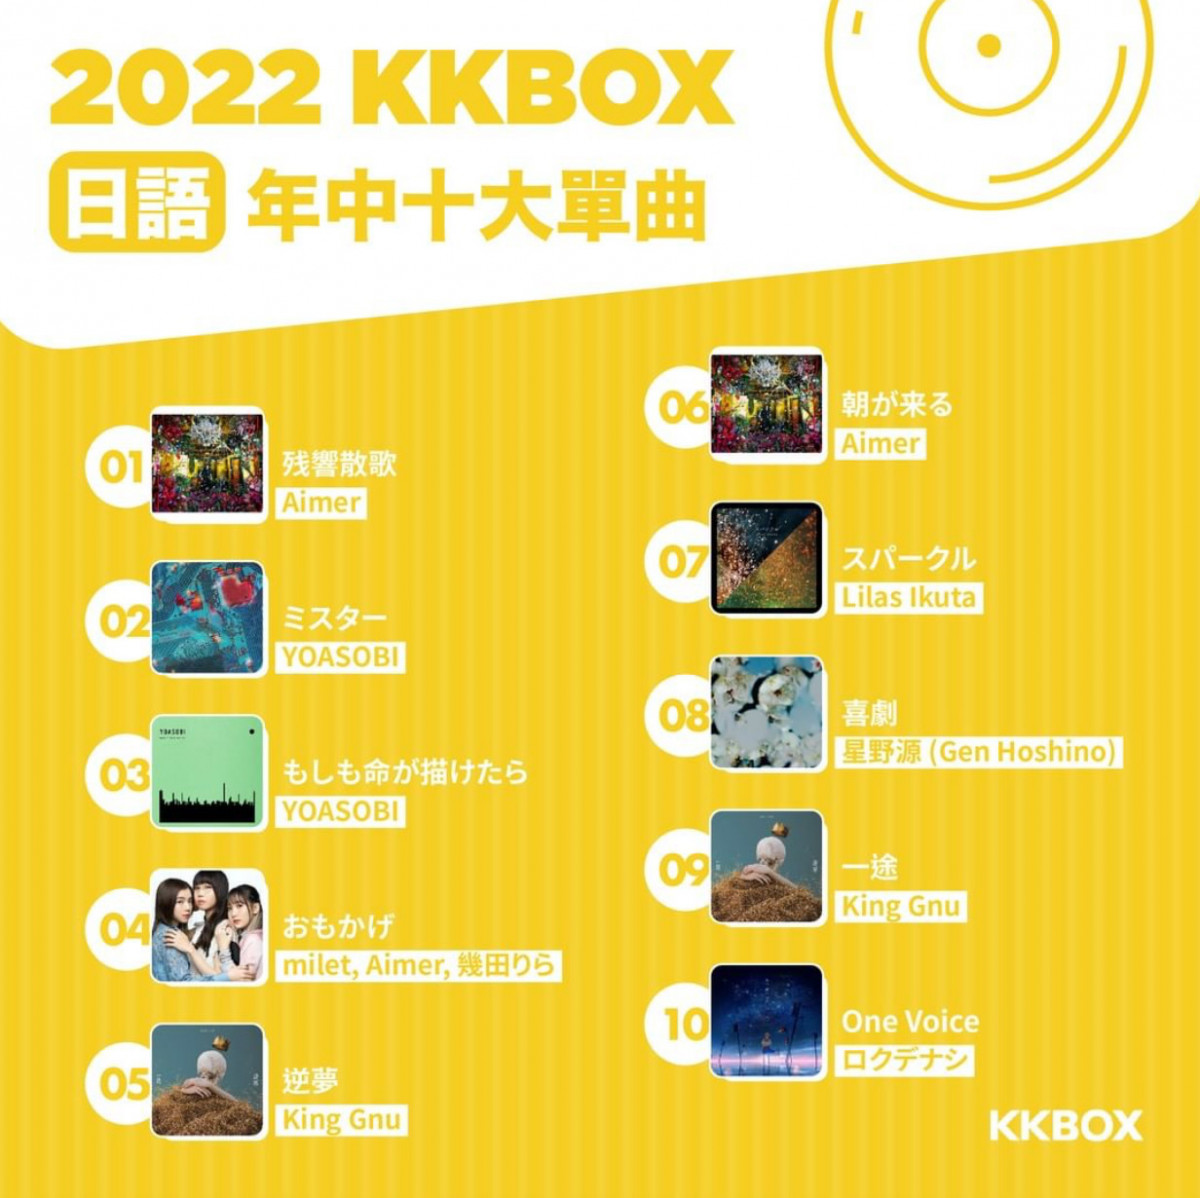 香港KKBOX 2022年中榜 日語單曲首十位大公開：動畫歌曲帶動香港的日本音樂潮流